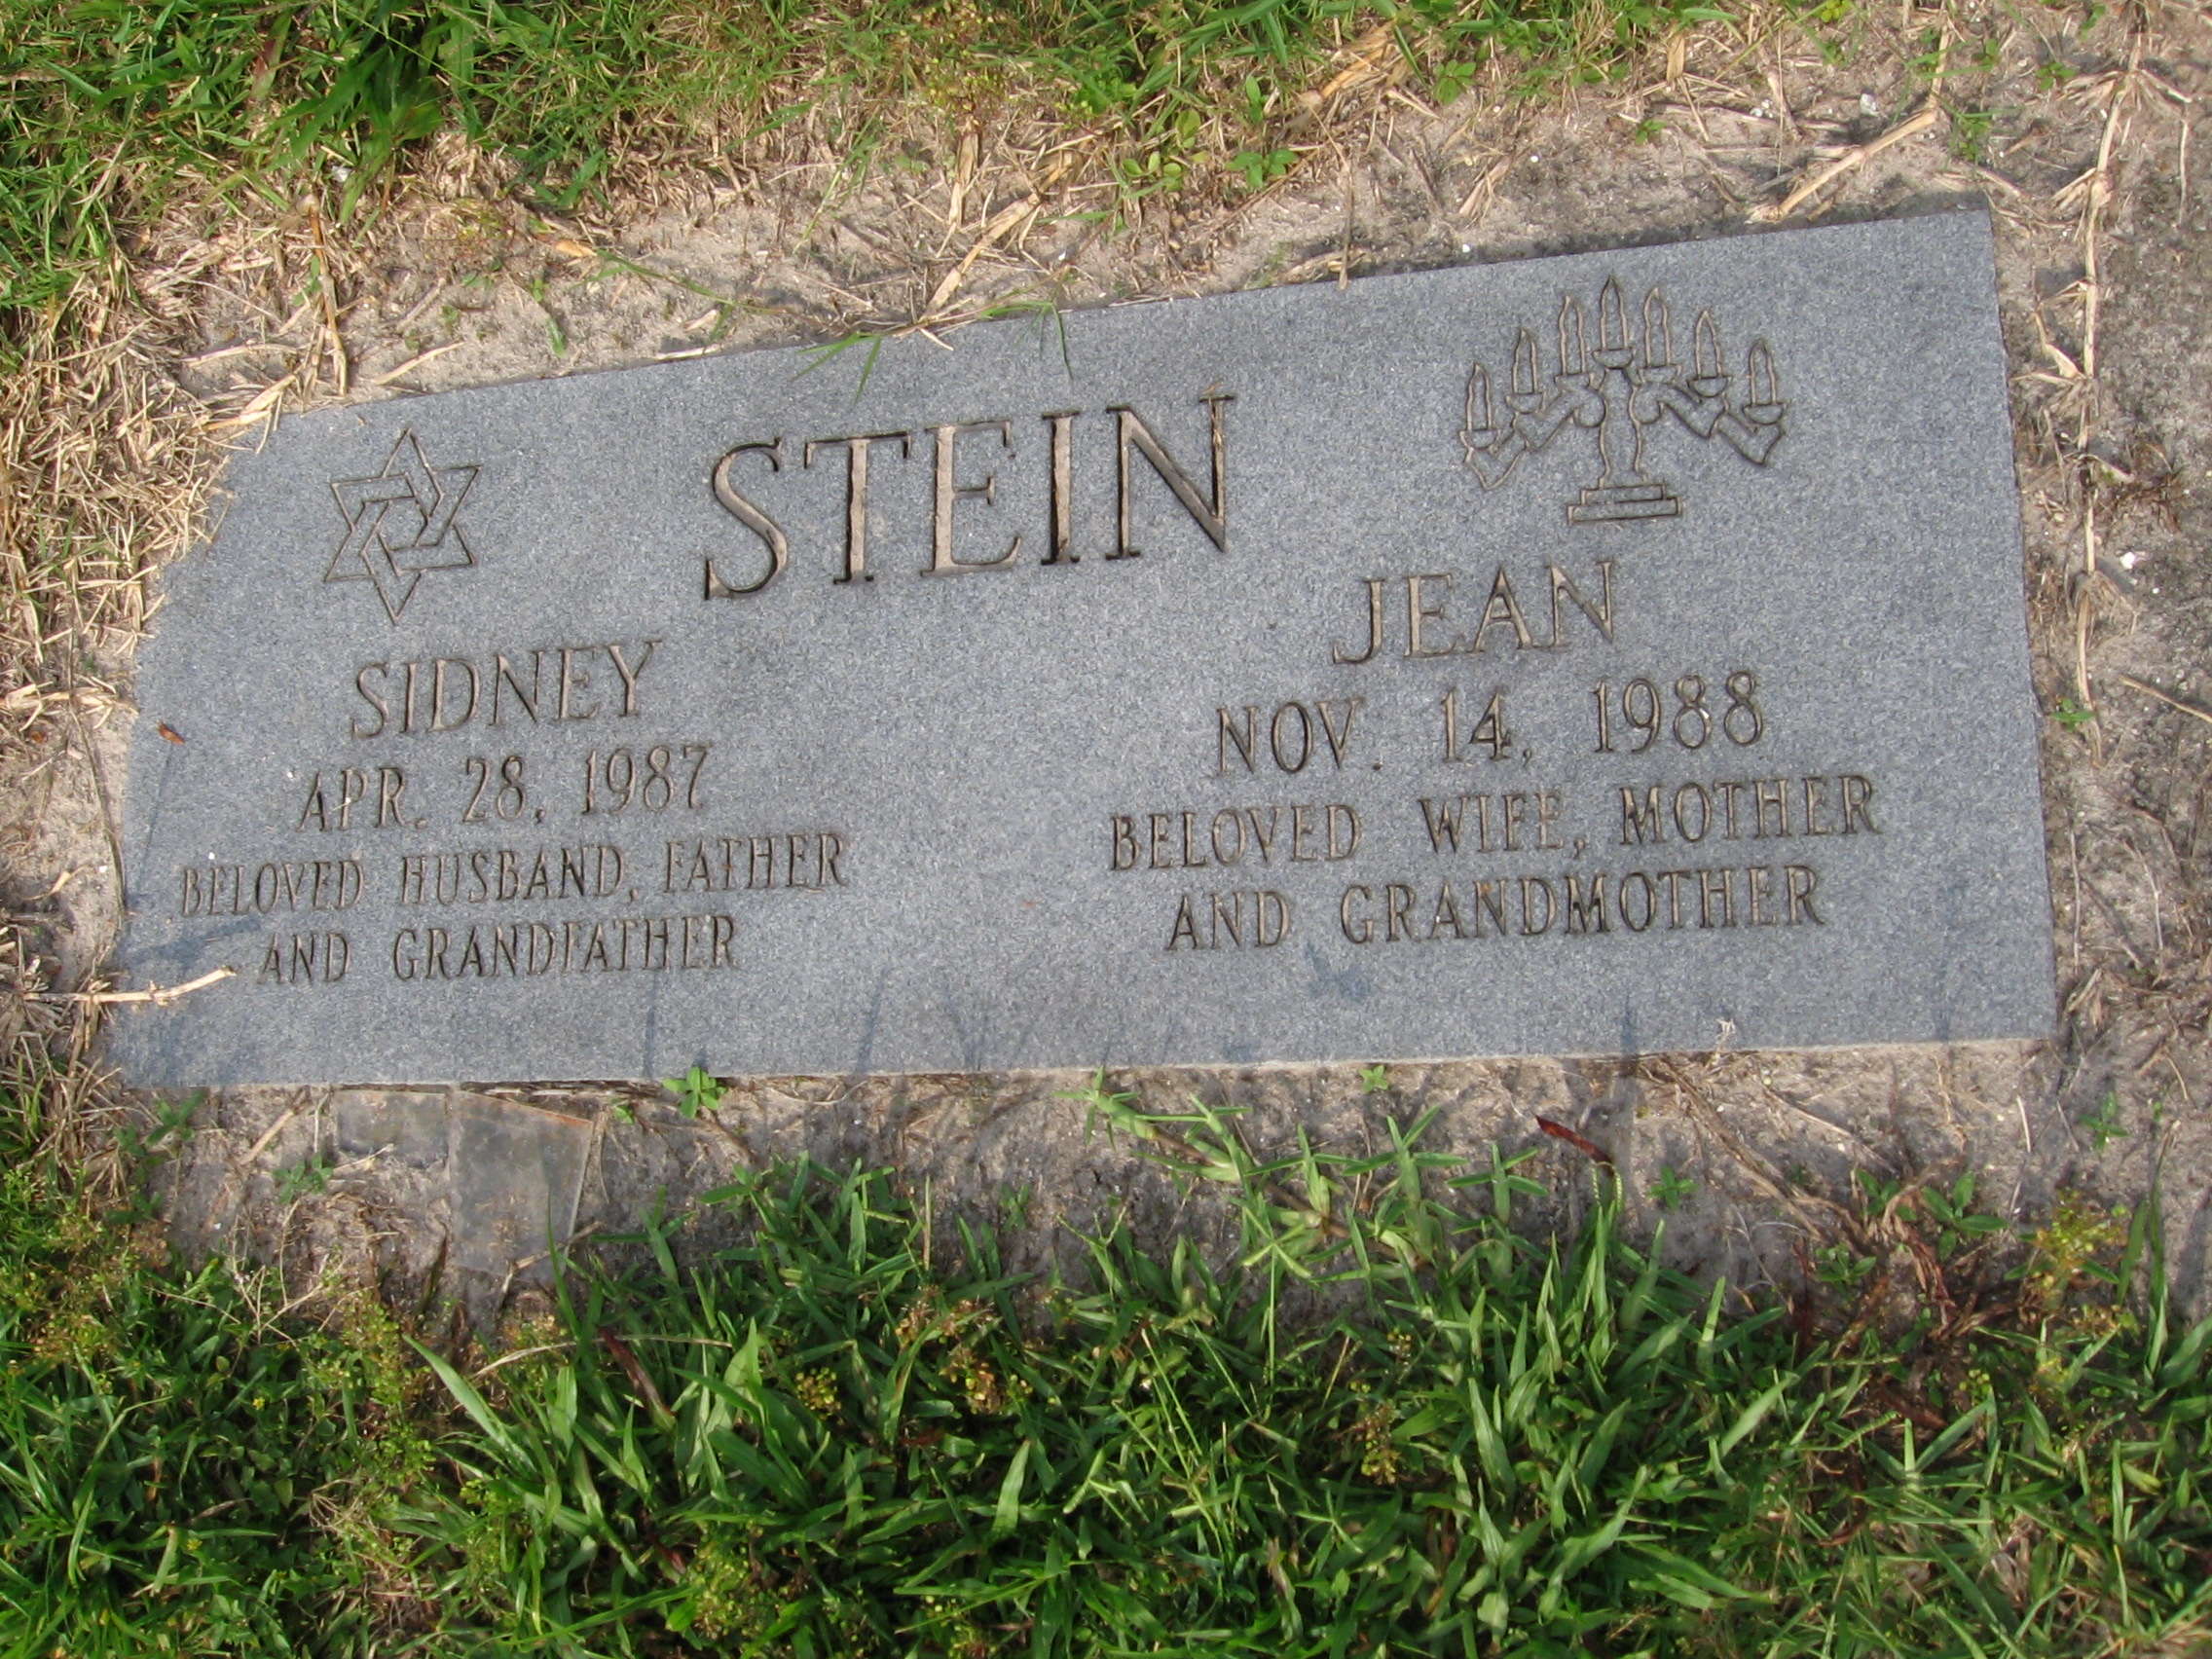 Jean Stein